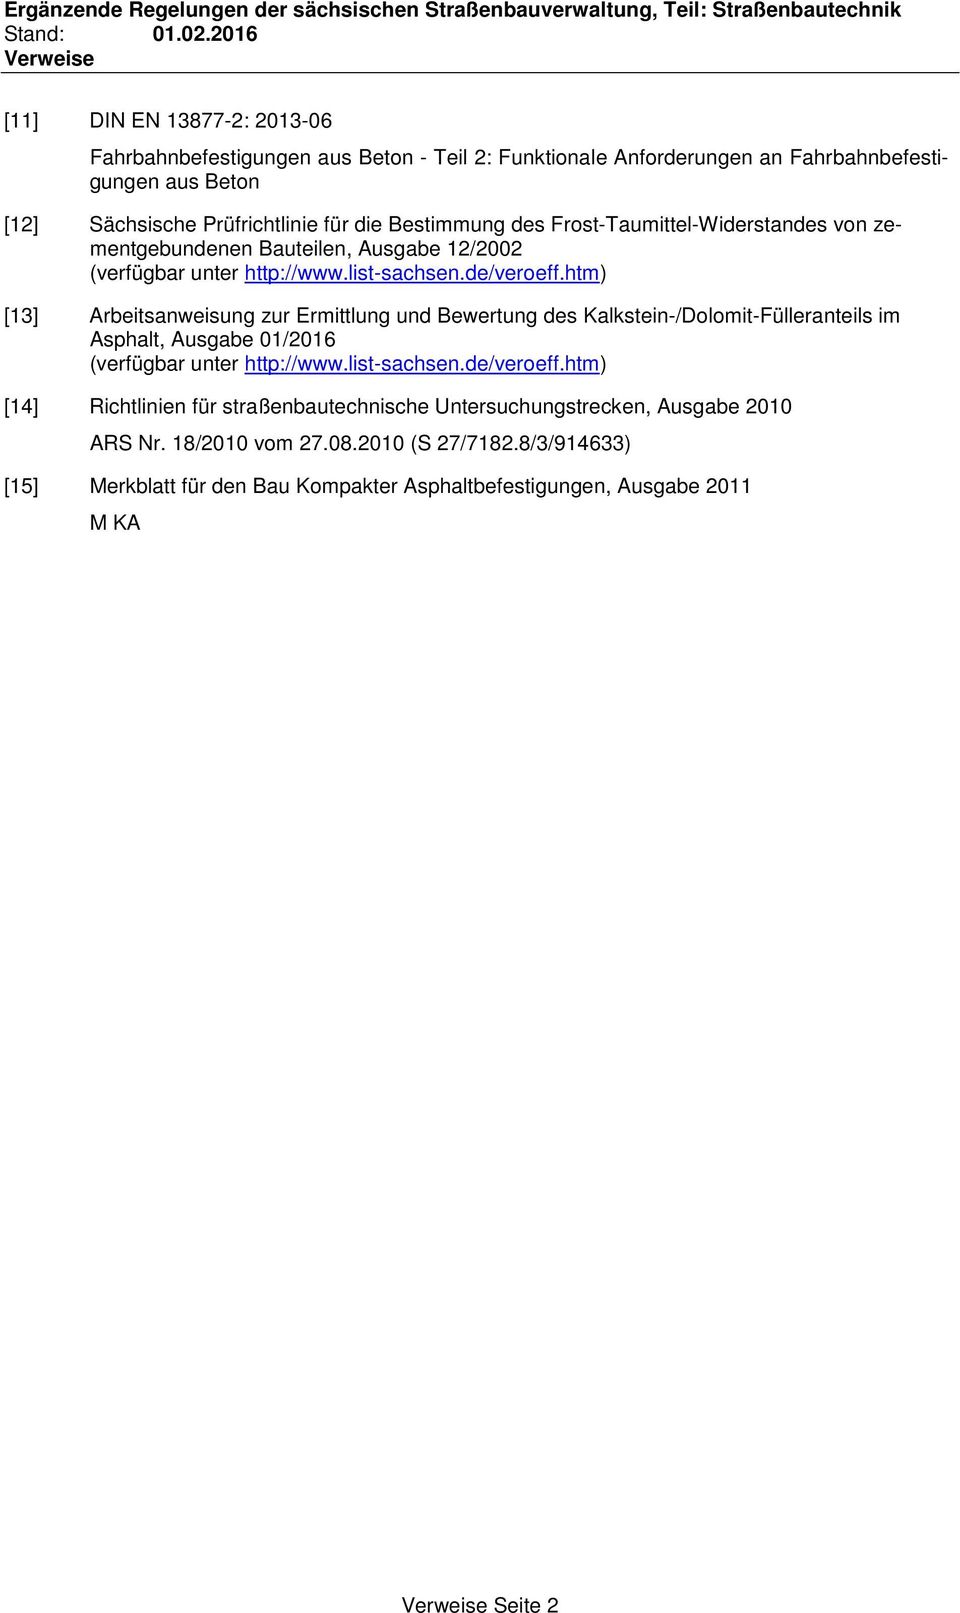 htm) [13] Arbeitsanweisung zur Ermittlung und Bewertung des Kalkstein-/Dolomit-Fülleranteils im Asphalt, Ausgabe 01/2016 (verfügbar unter http://www.list-sachsen.de/veroeff.